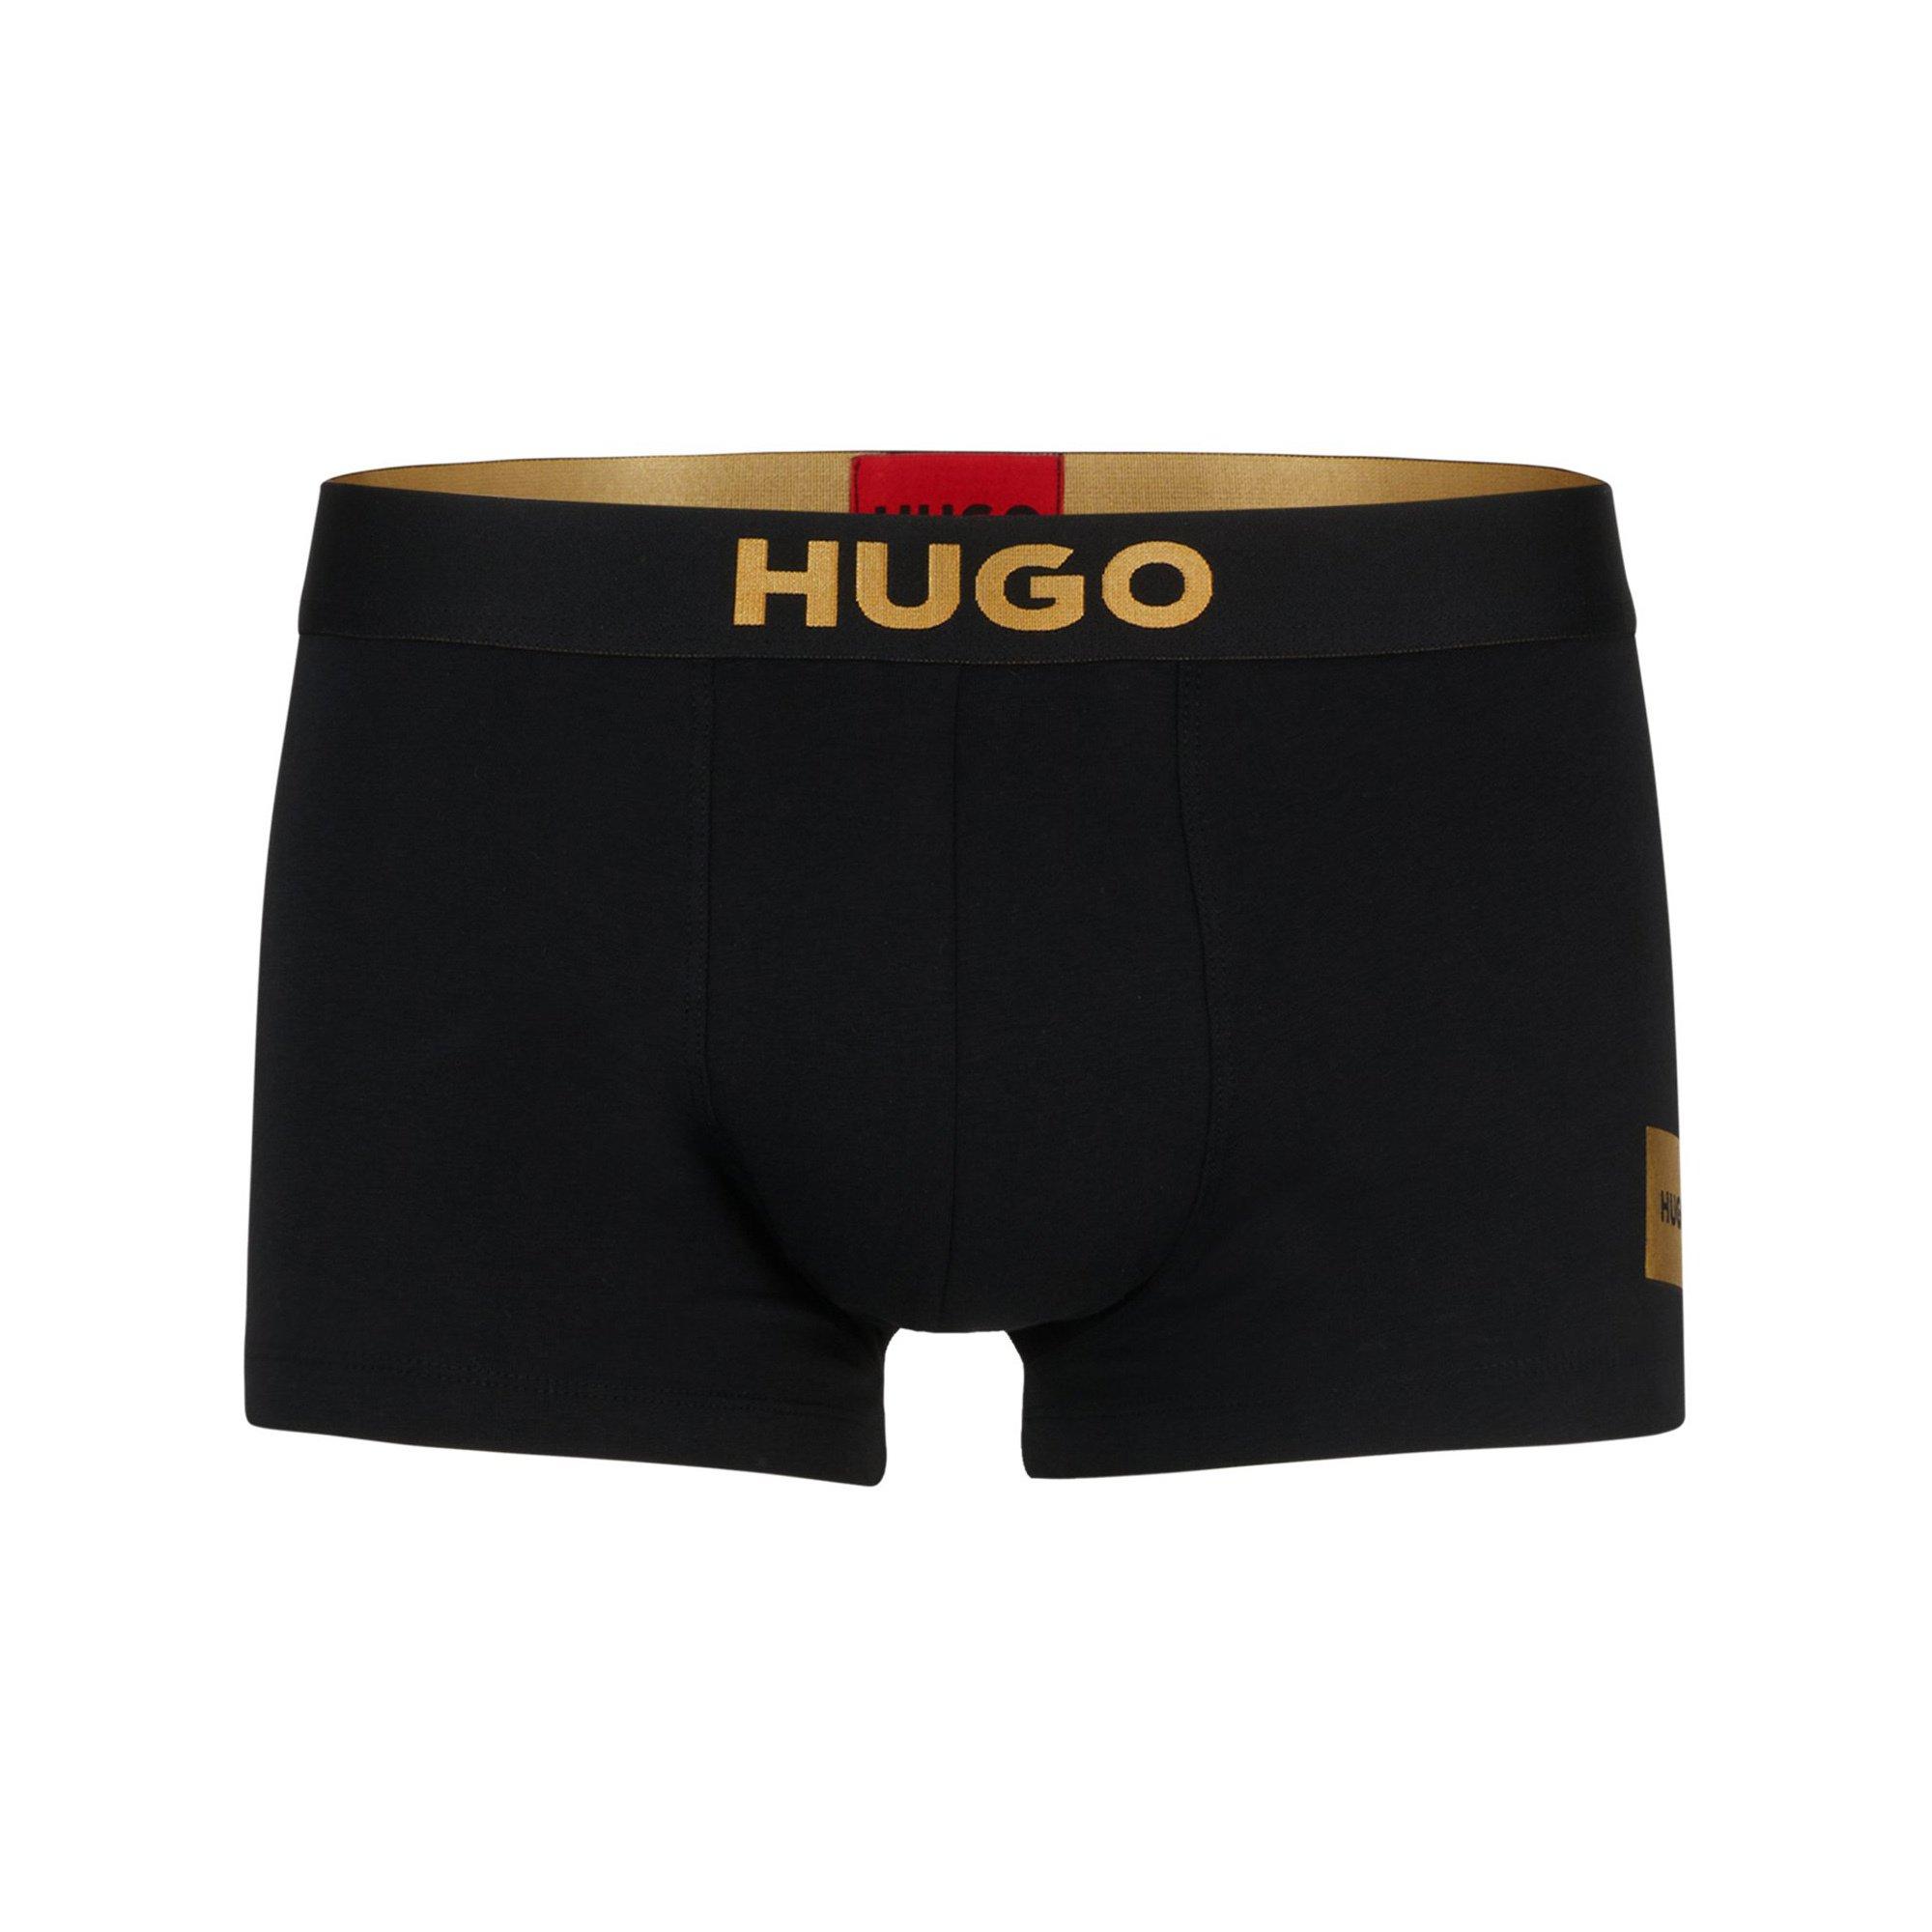 HUGO TRUNK&SOCKS GIFT Hipster, multi-pack 